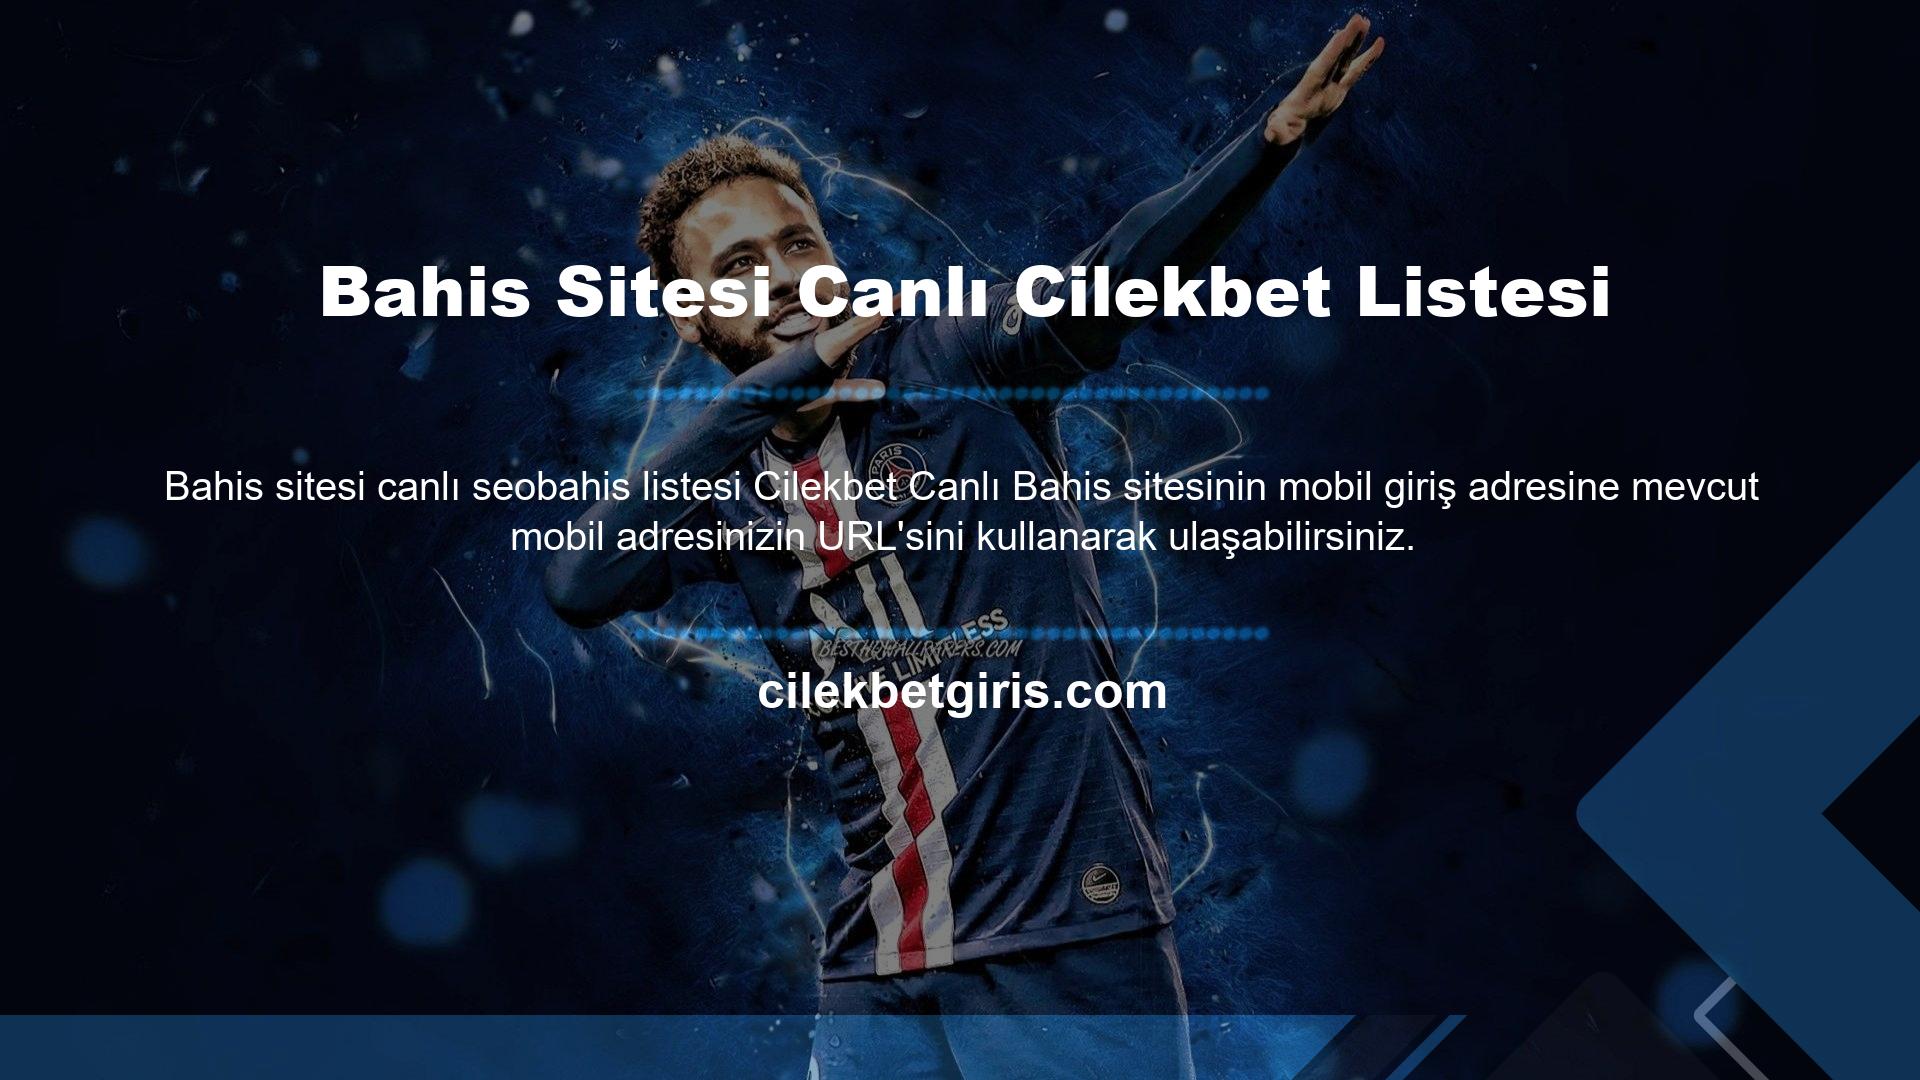 Yeni giriş URL'sini Cilekbet resmi sosyal medya hesaplarında ve web sitemizde bulabilirsiniz